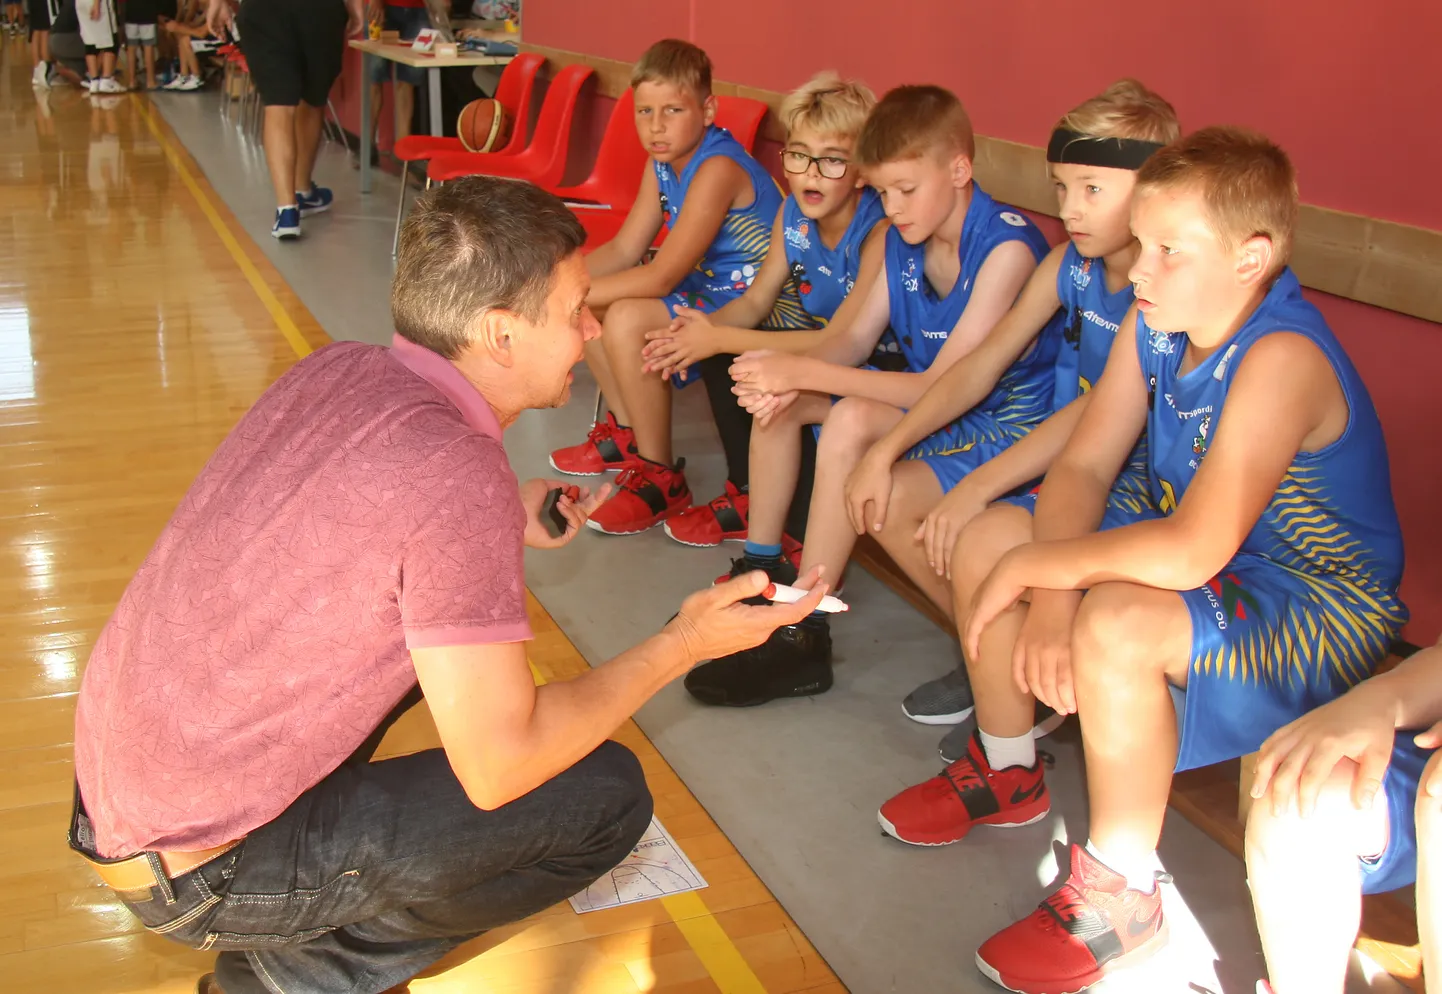 Тренер Прийт Стернхоф дает инструкции, как переиграть соперника, мальчишкам из "HITO/Karjamaa" возрастного класса U11.